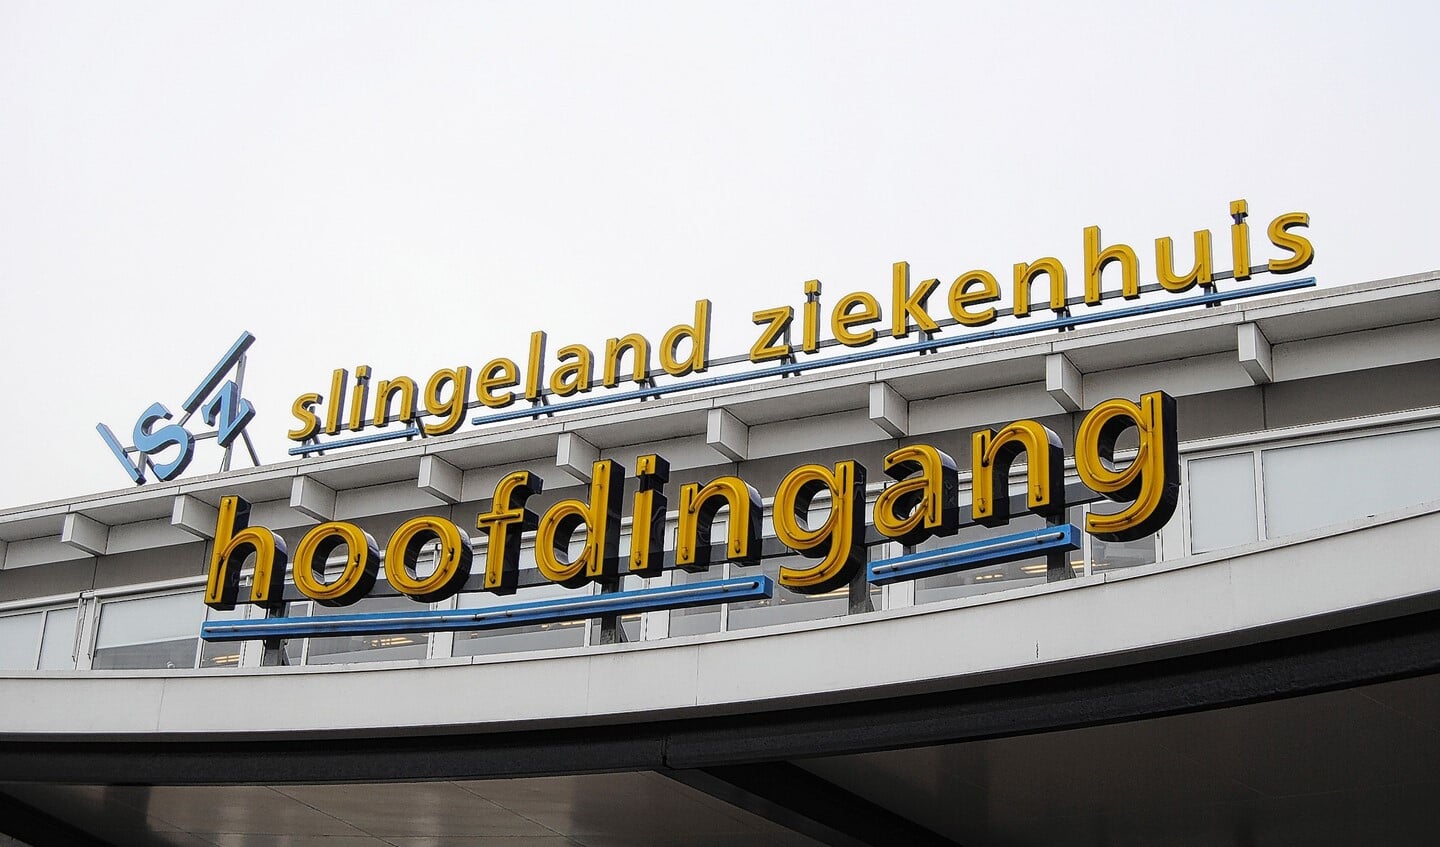 De entree van het Slingeland Ziekenhuis in Doetinchem.